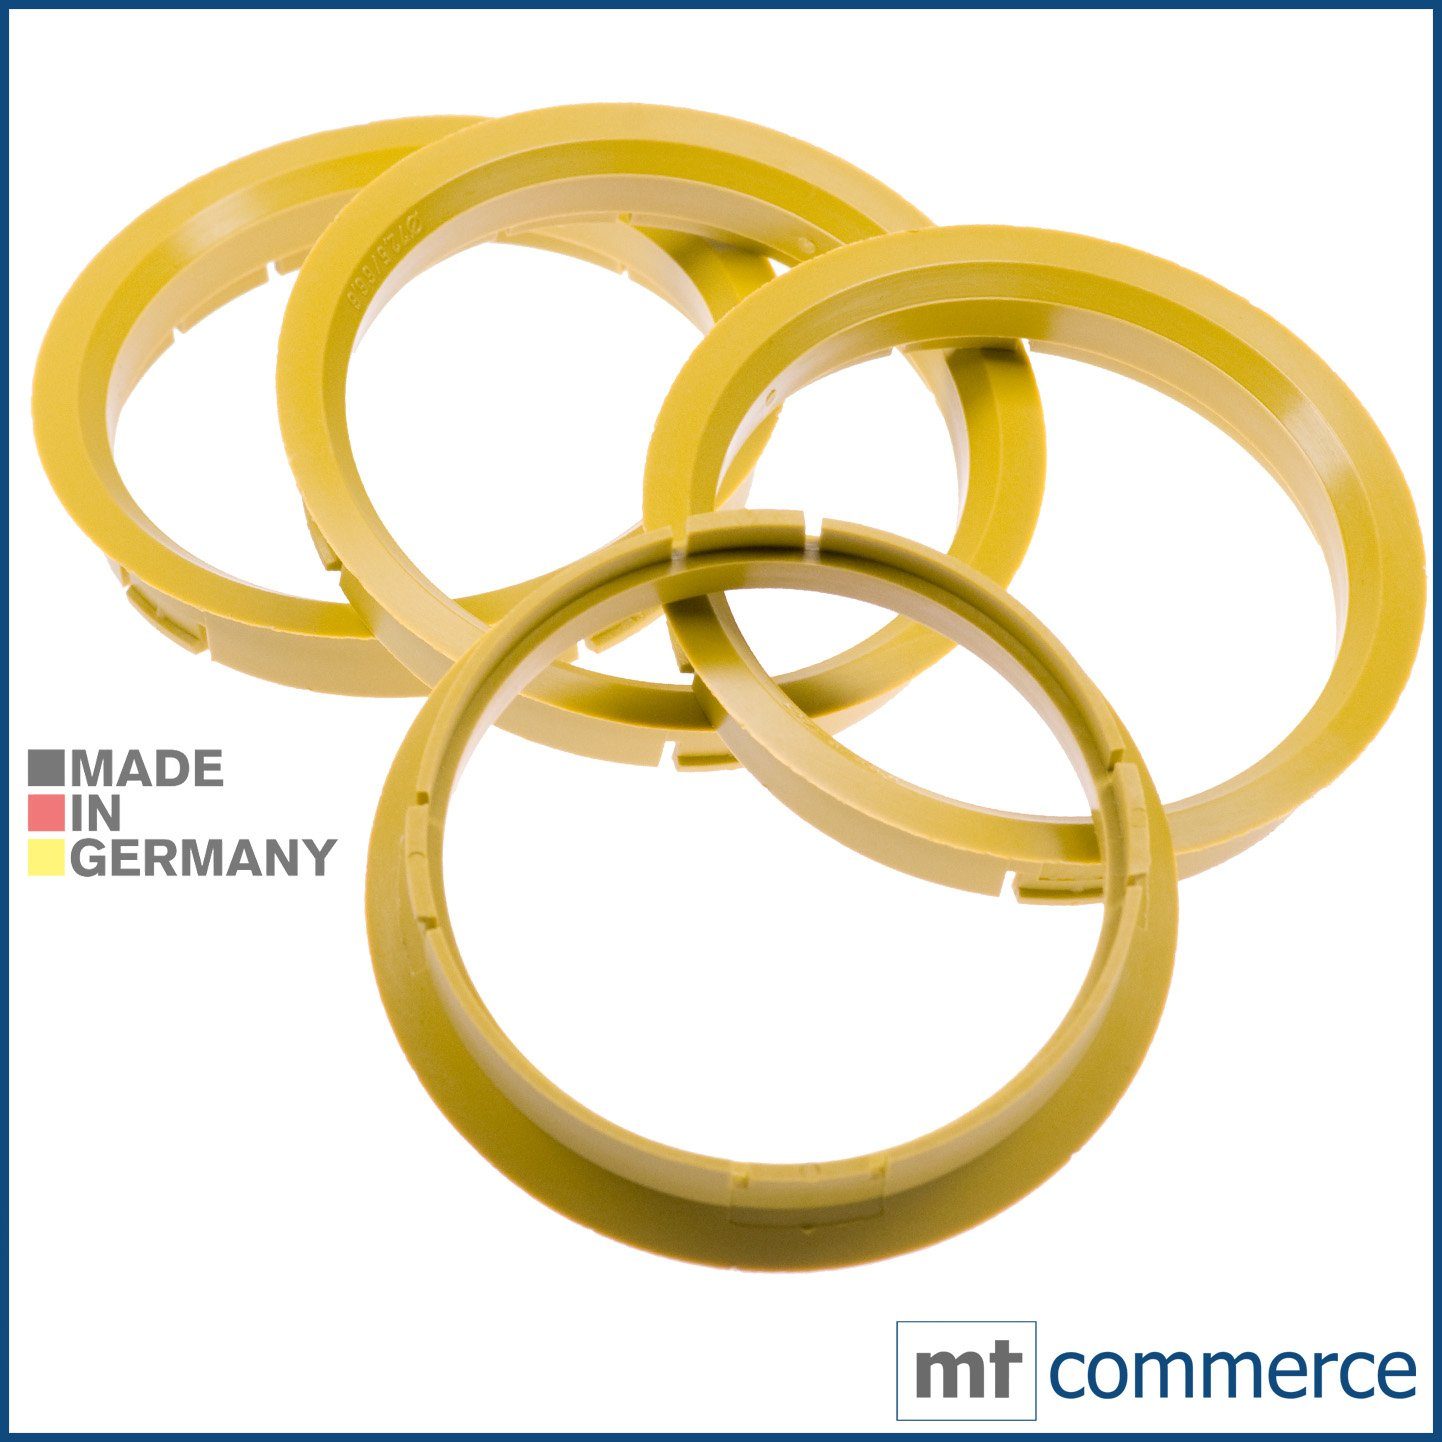 RKC Reifenstift 4X Zentrierringe gelb Felgen Ringe Made in Germany, Maße: 72,5 x 66,6 mm